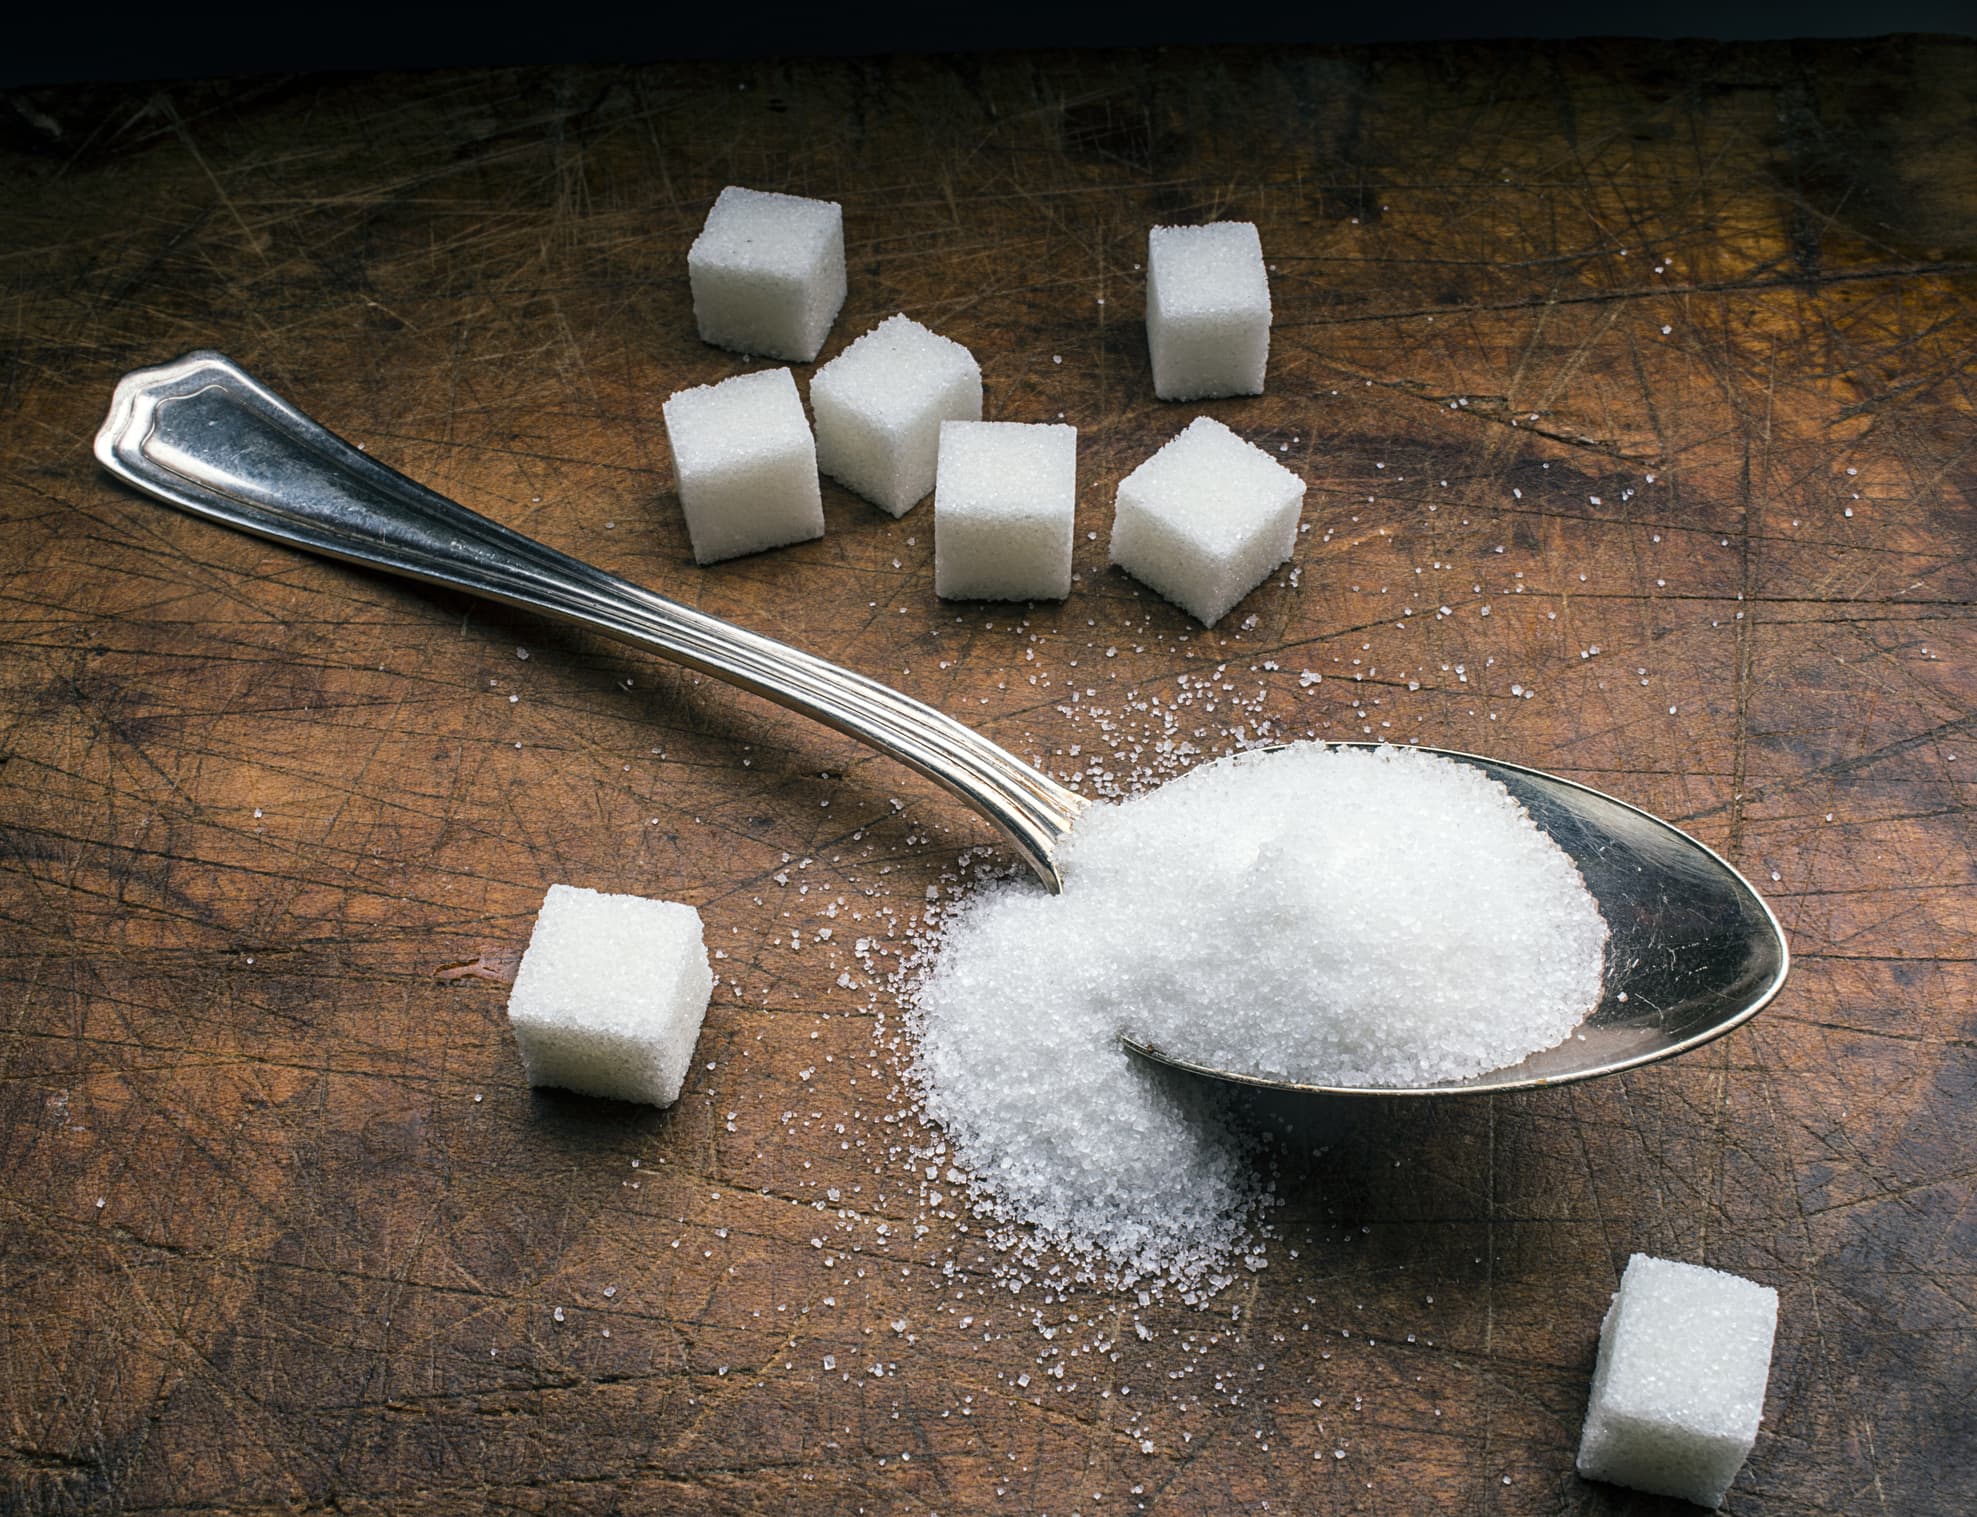 El Departamento de Justicia demanda para bloquear una gran fusión de azúcar, advirtiendo sobre aumentos de precios y tensiones en la cadena de suministro